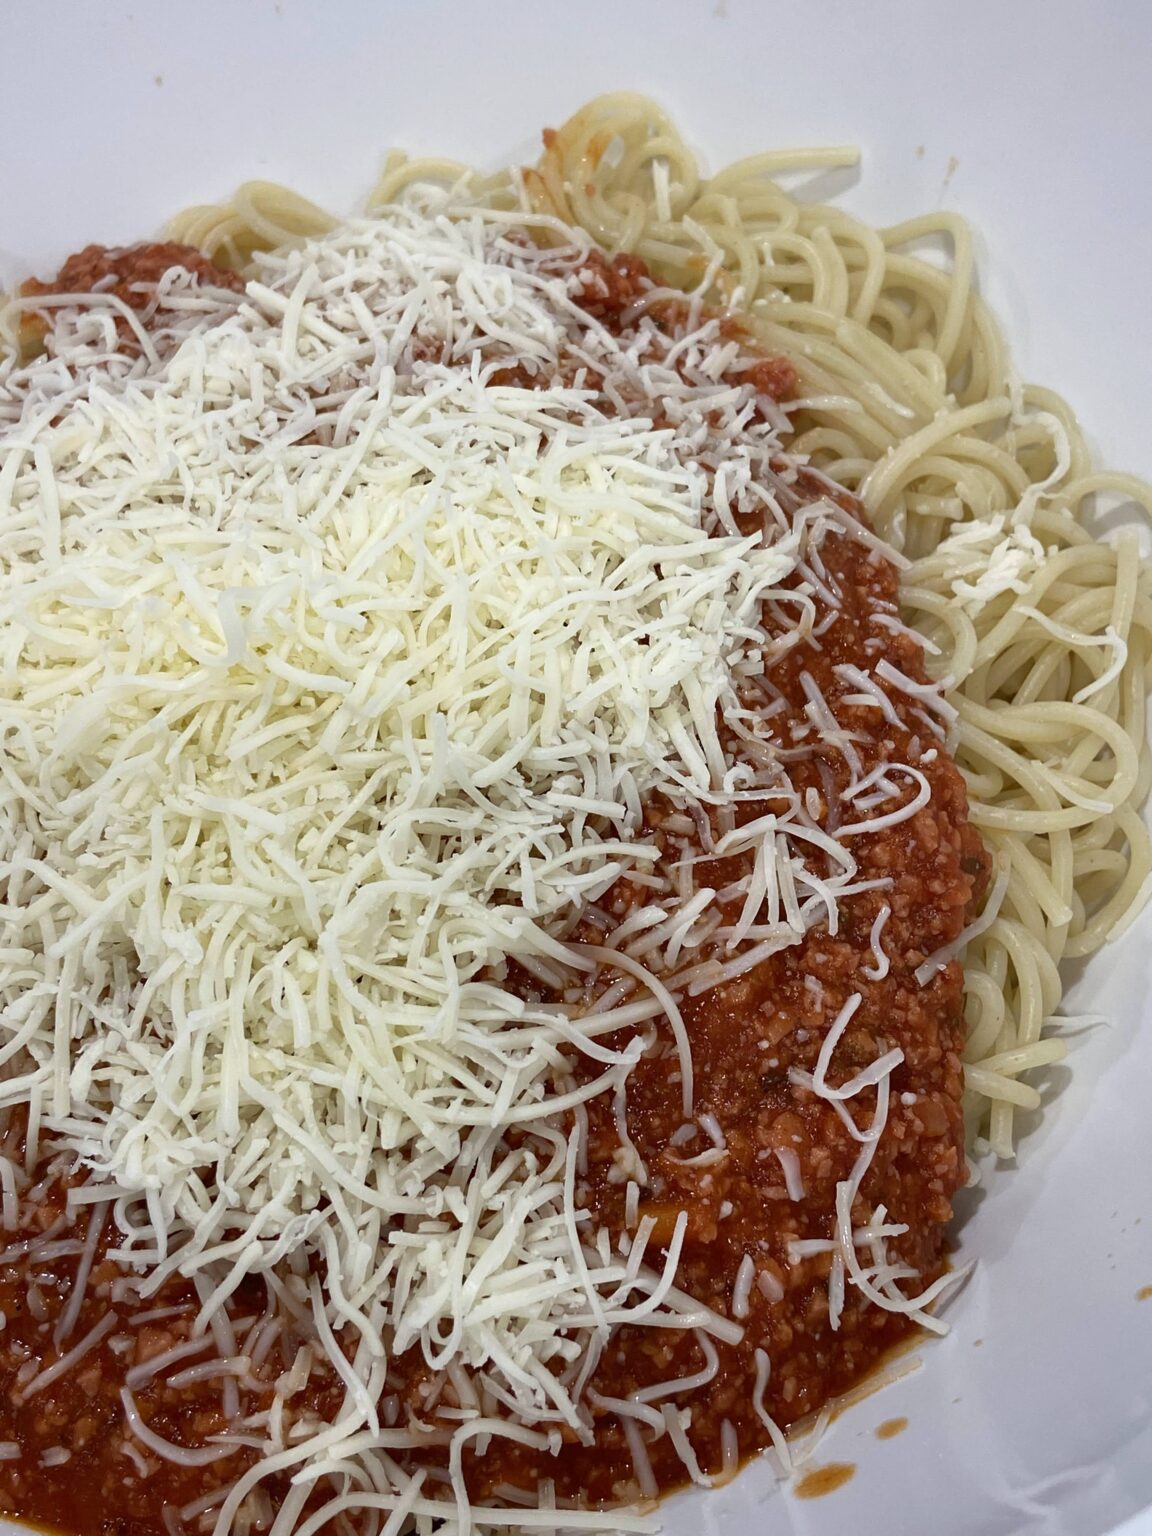 Cheesy Spaghetti with Hot Dogs - Emmandi's Kitchen